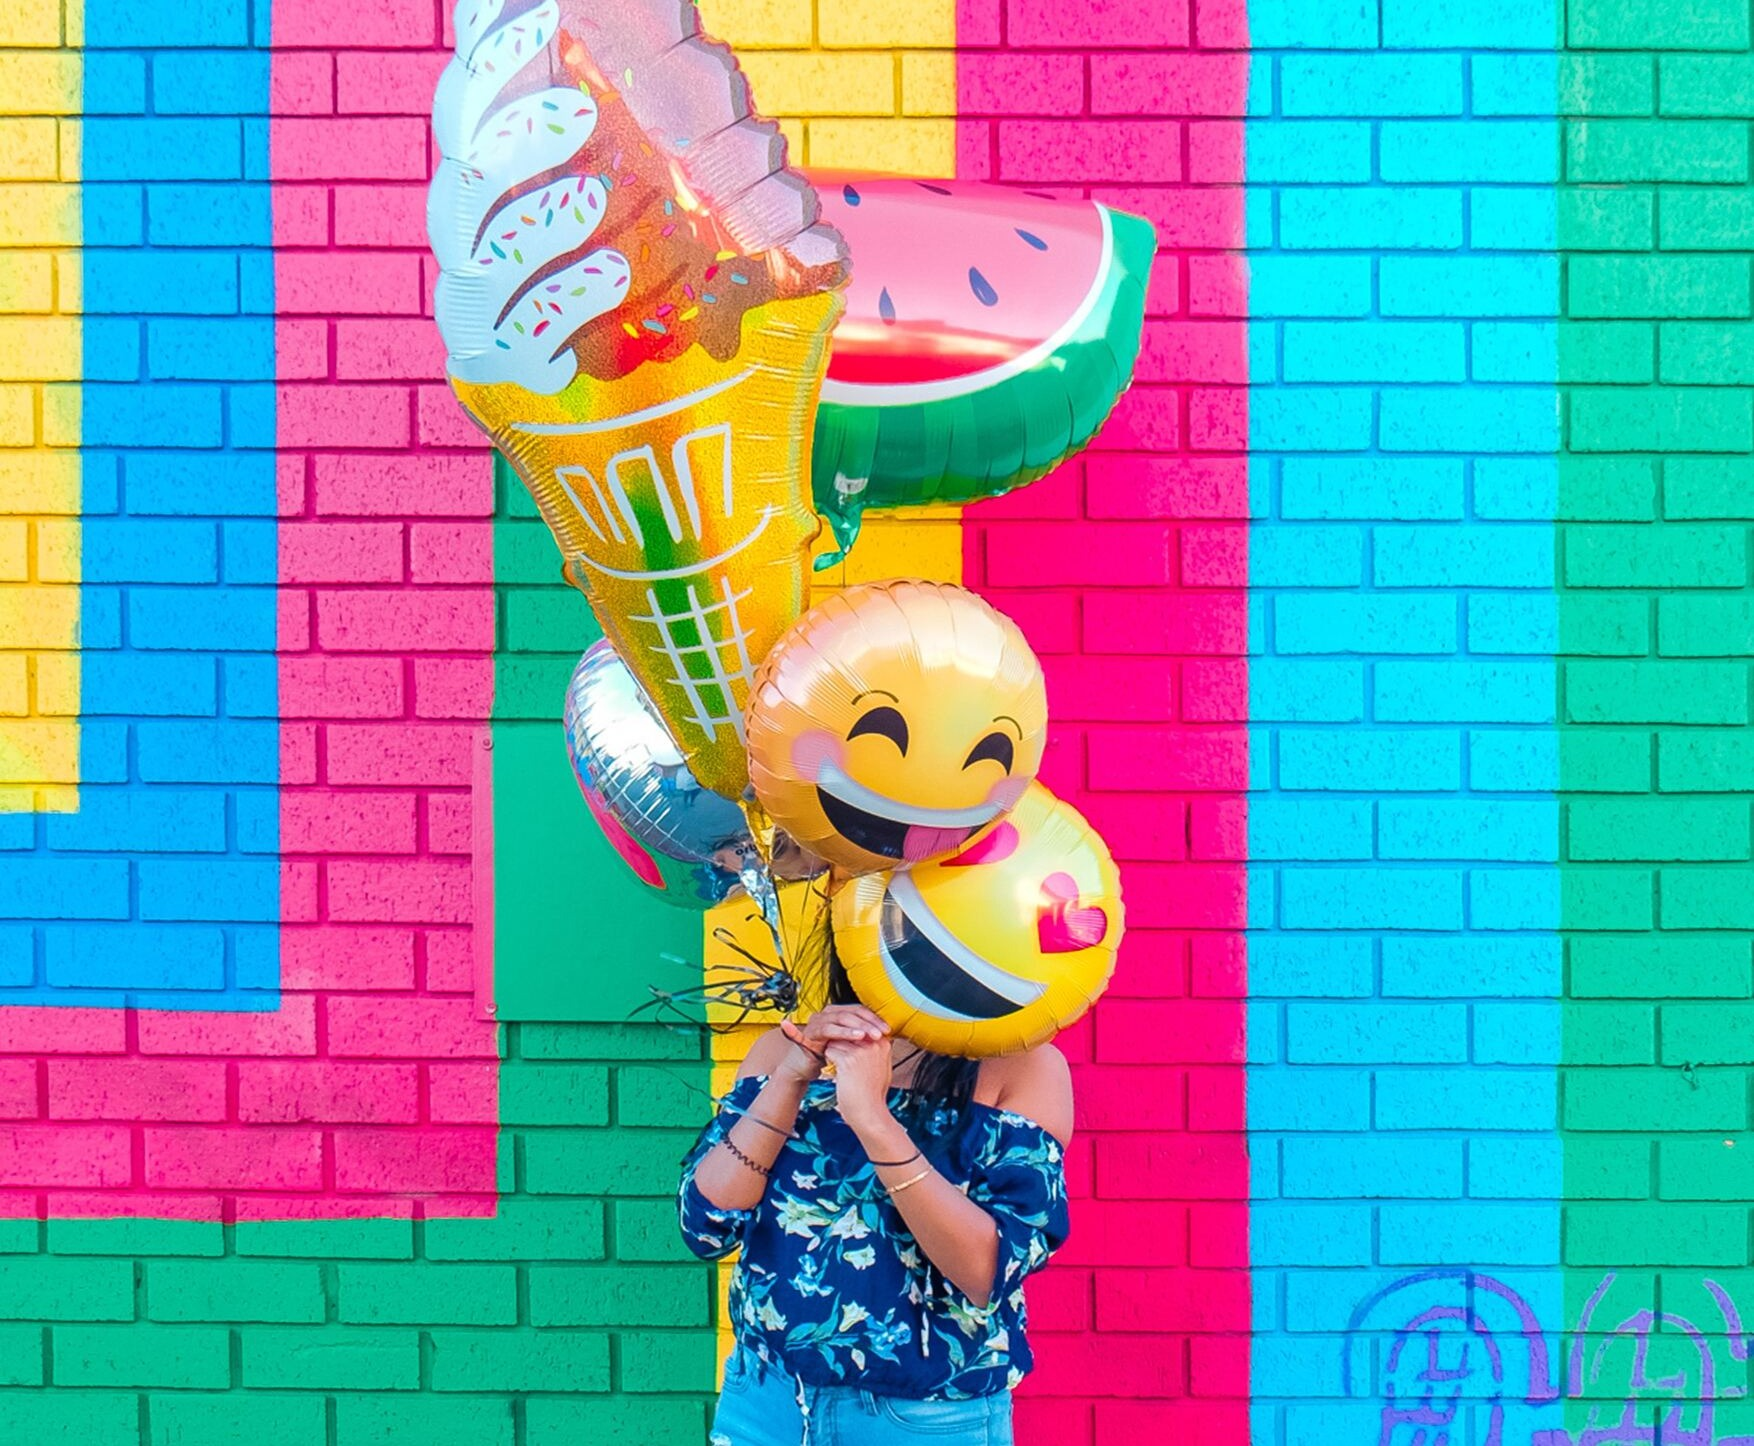 Vrouw staat voor een gekleurde muur en houdt ballonnen voor haar gezicht in de vorm van smiley gezichtjes, een room ijsje en een schijf water meloen.